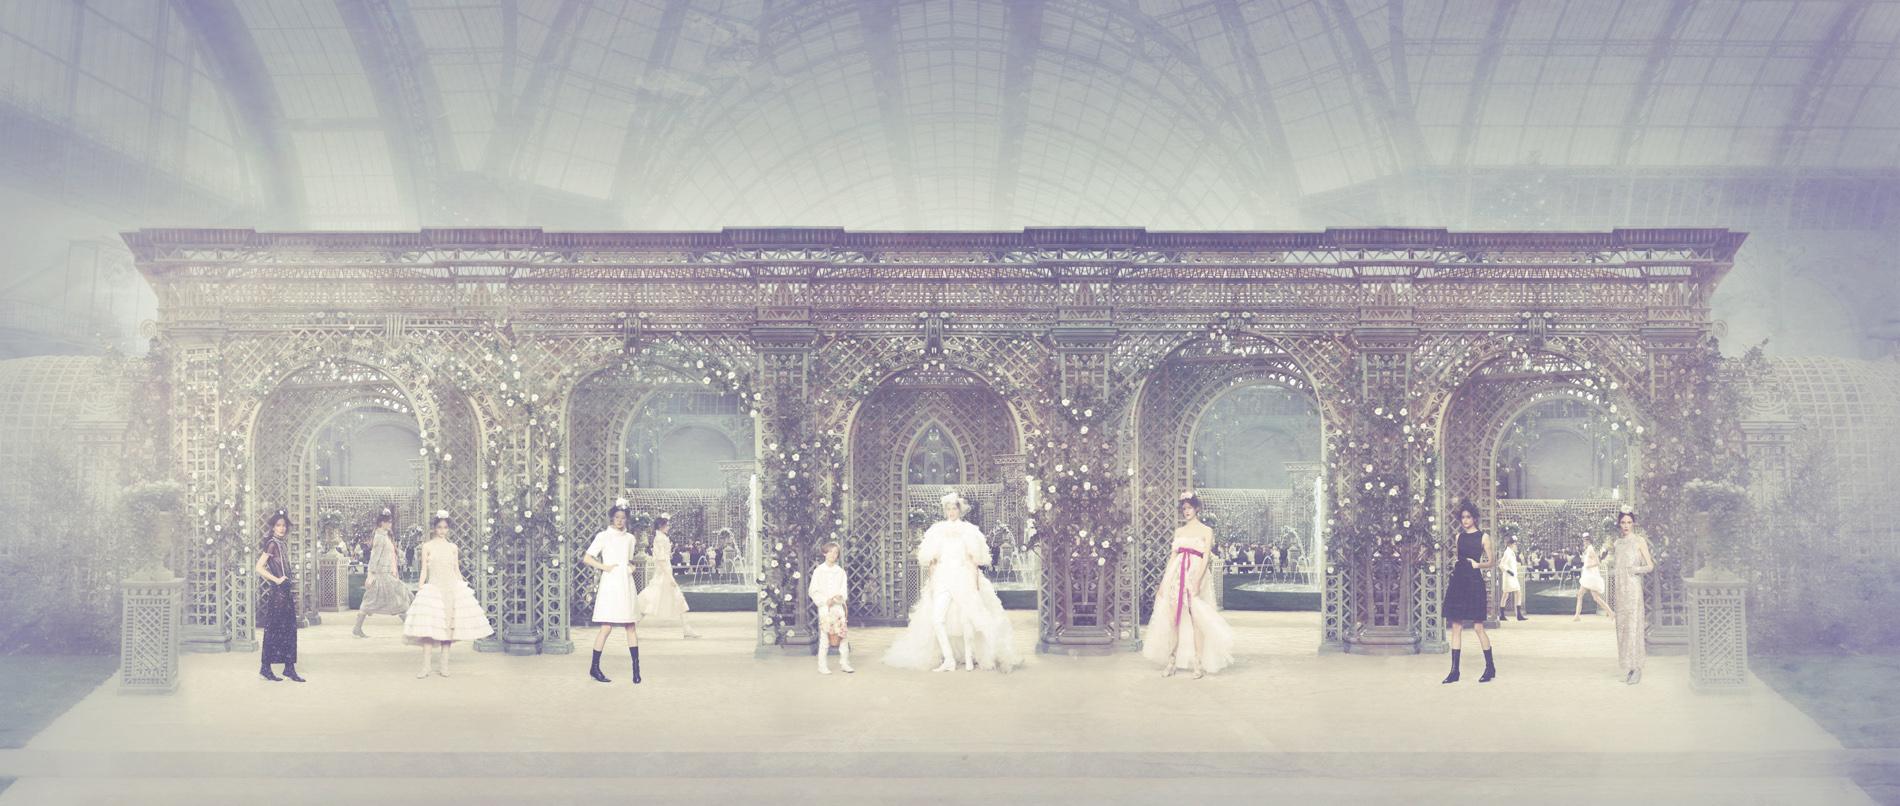 國際知名設計師Karl Lagerfeld為Chanel設計過最華麗矚目的時裝舞台